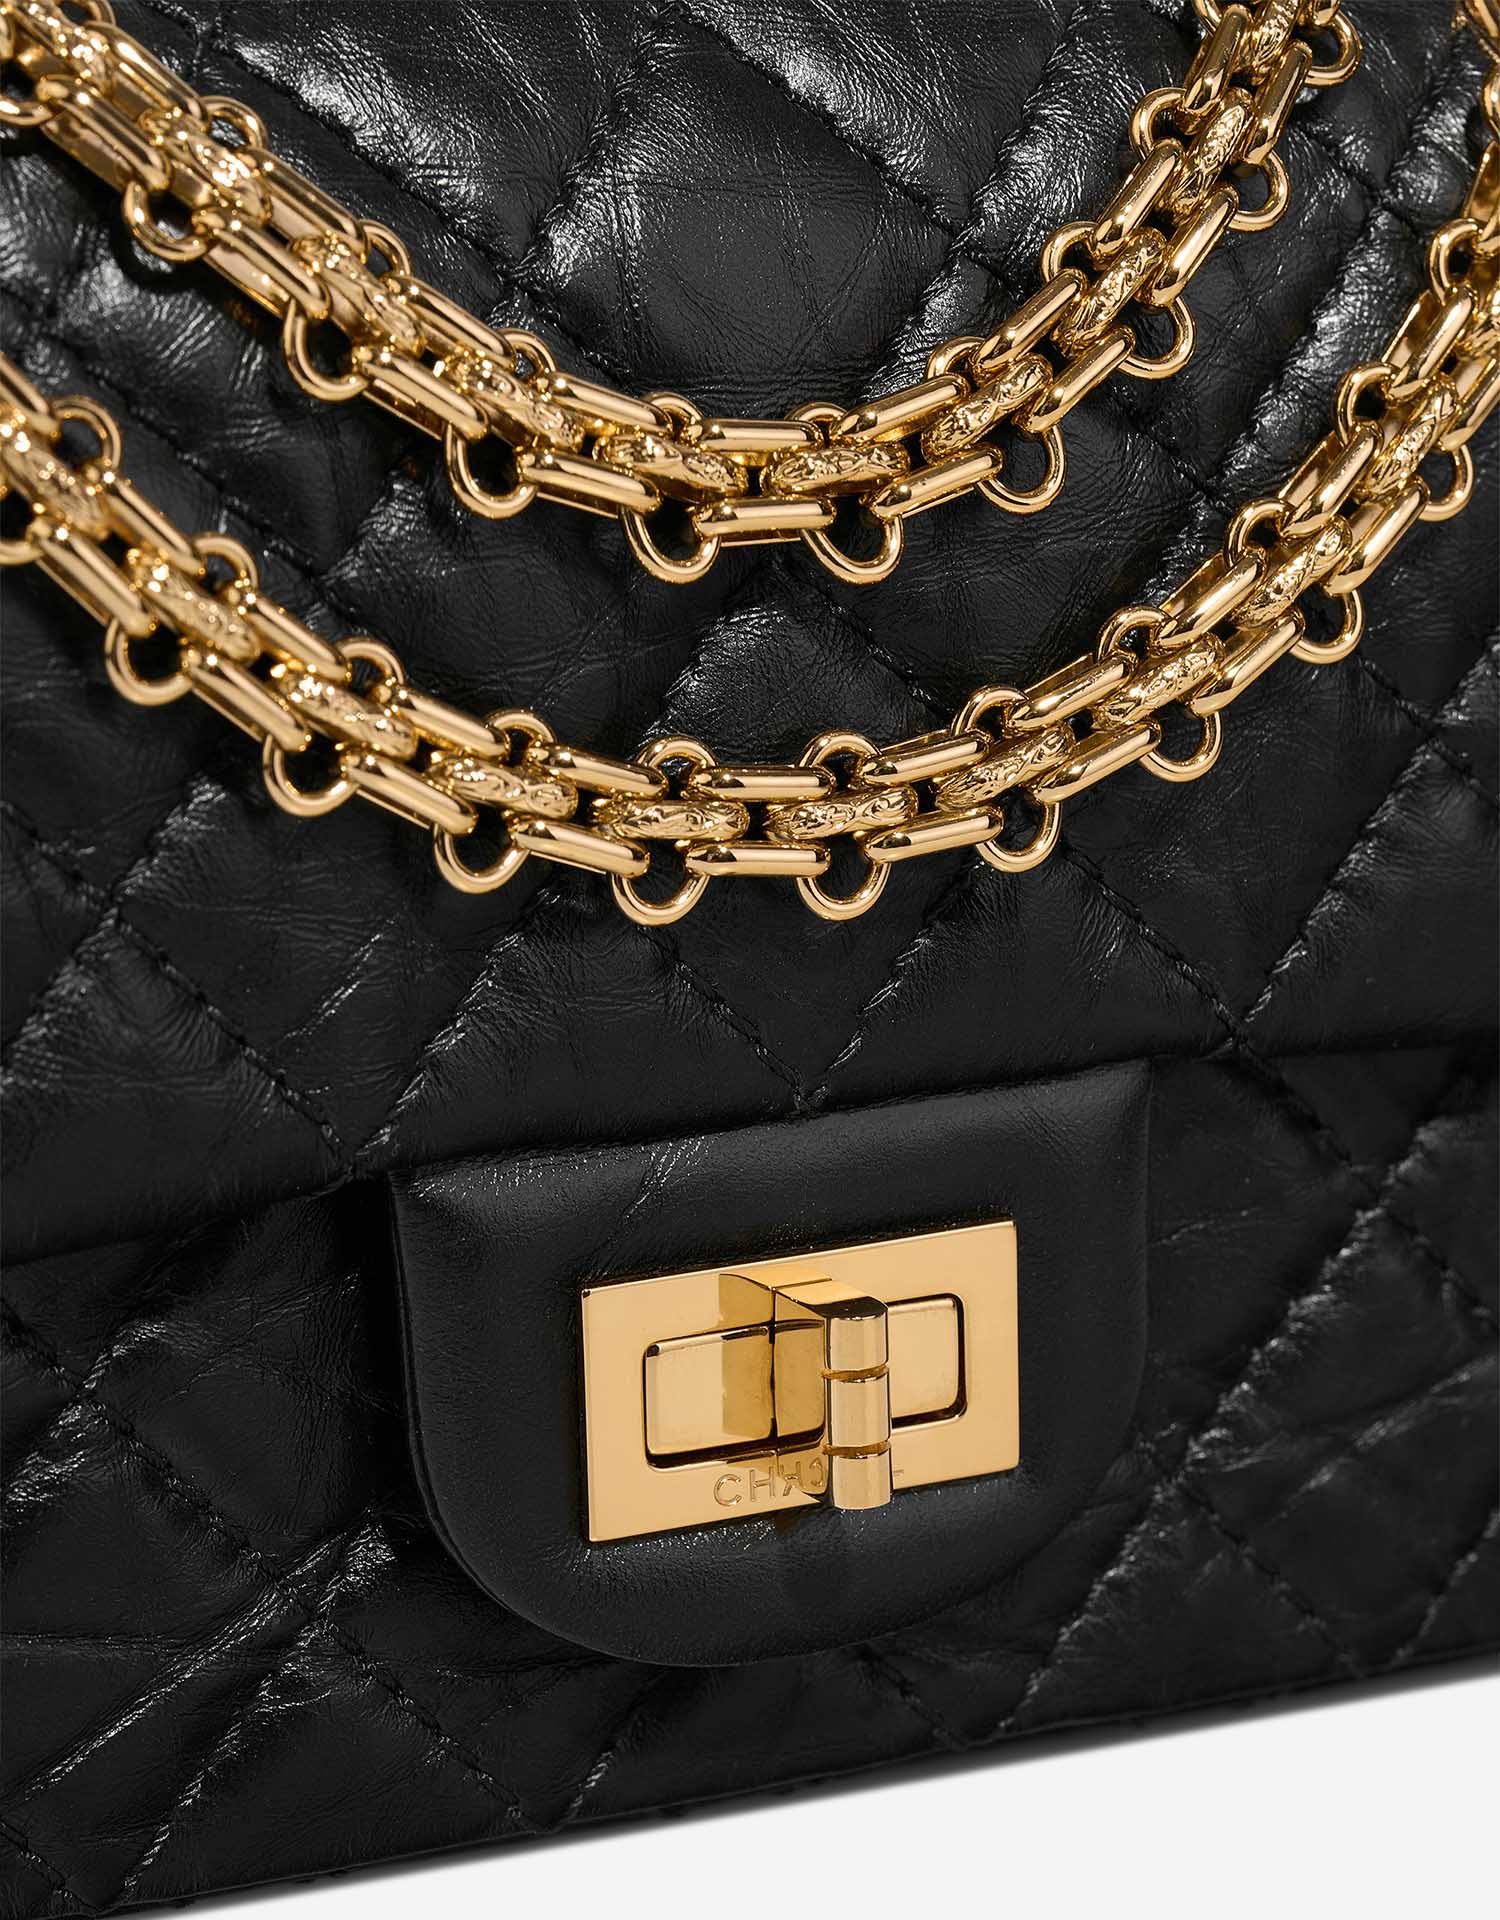 Chanel 255Reissue 224 Schwarz Verschluss-System | Verkaufen Sie Ihre Designer-Tasche auf Saclab.com